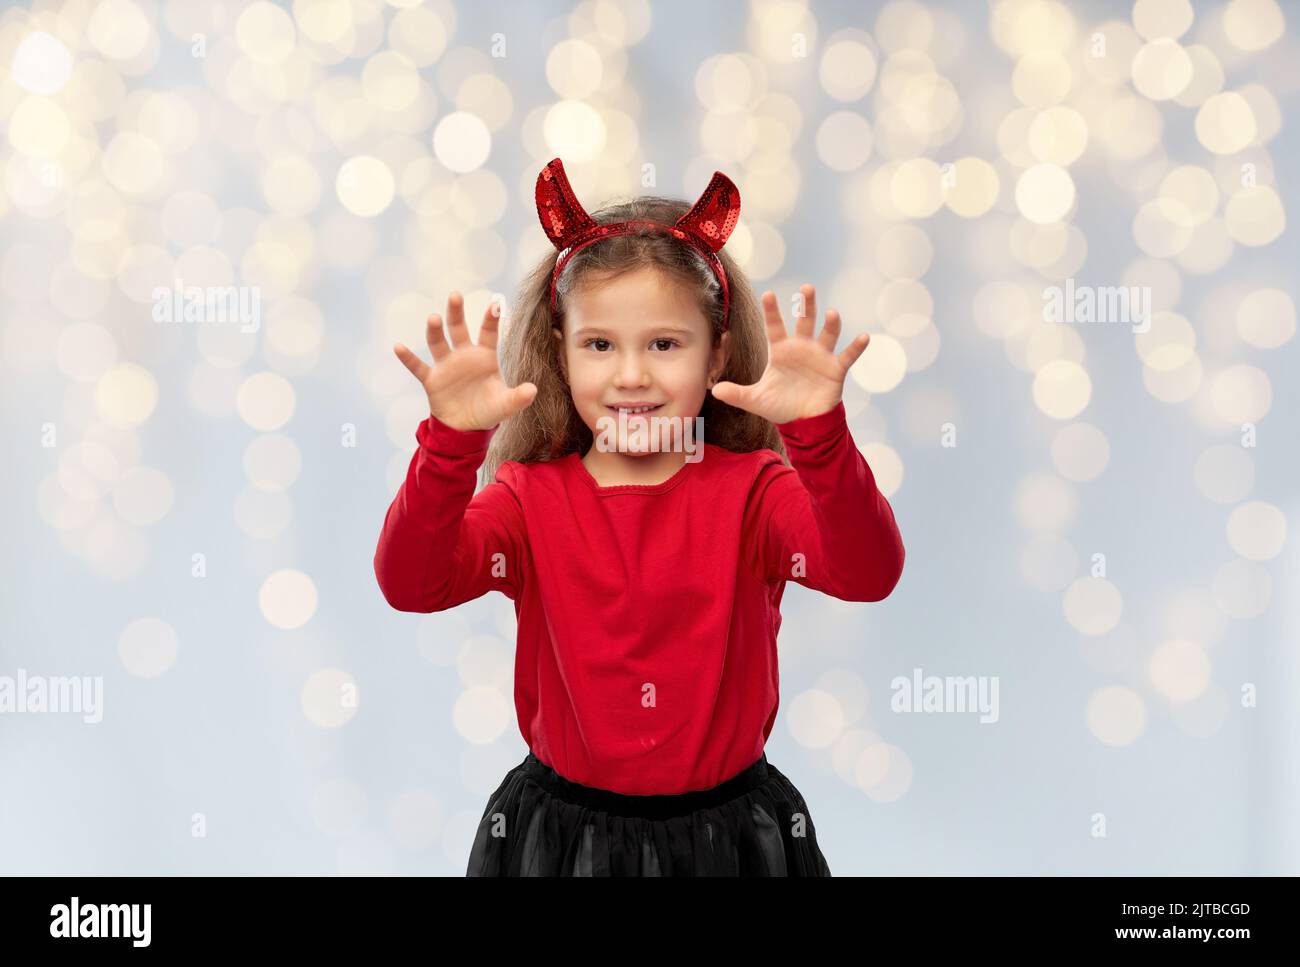 disfraz de chica con cuernos de diablo en halloween Foto de stock